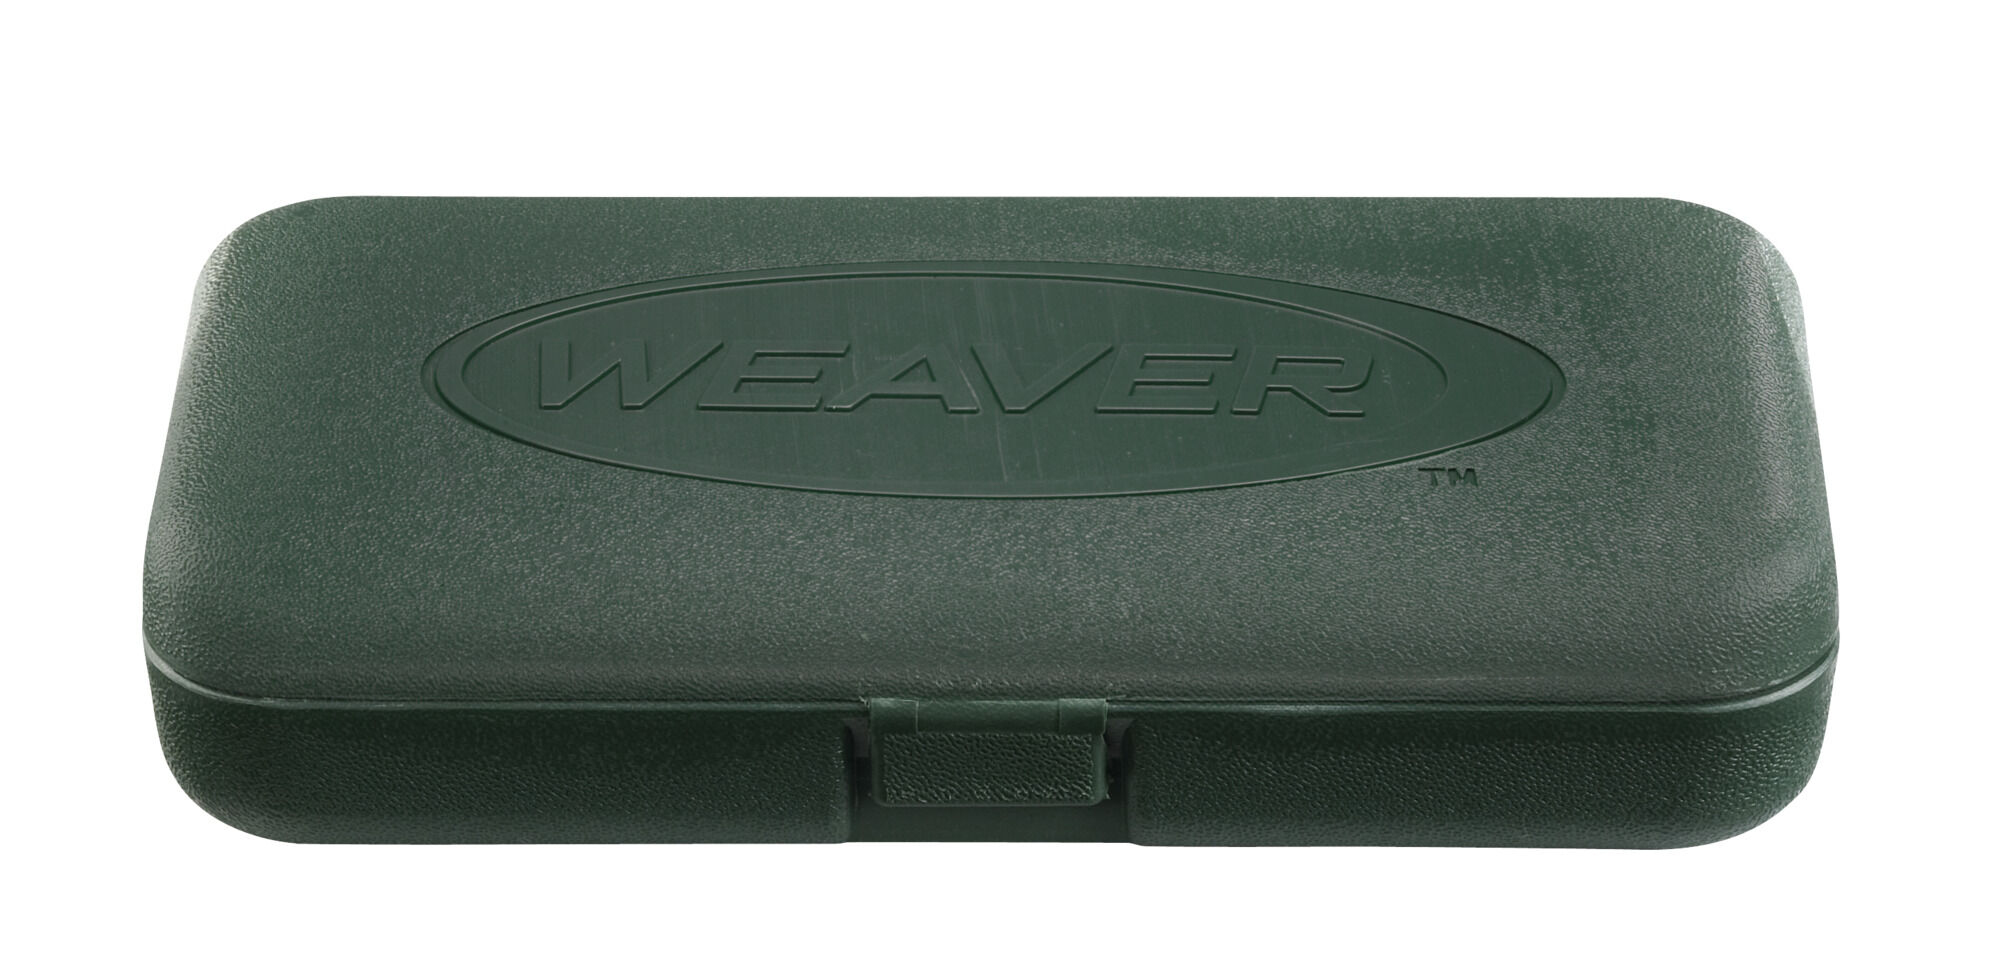 Weaver Entry Gunsmithing Tool Kit Green Case 849717 Wv849717 076683897176 for sale online 